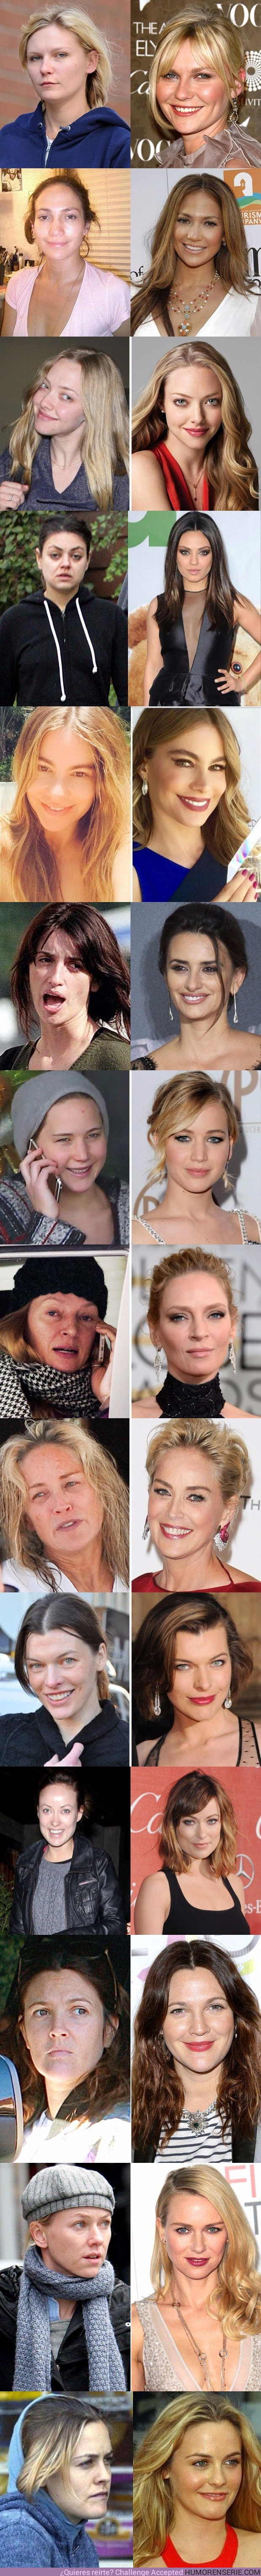 20045 - 14 actrices que serías incapaz de reconocer sin maquillaje